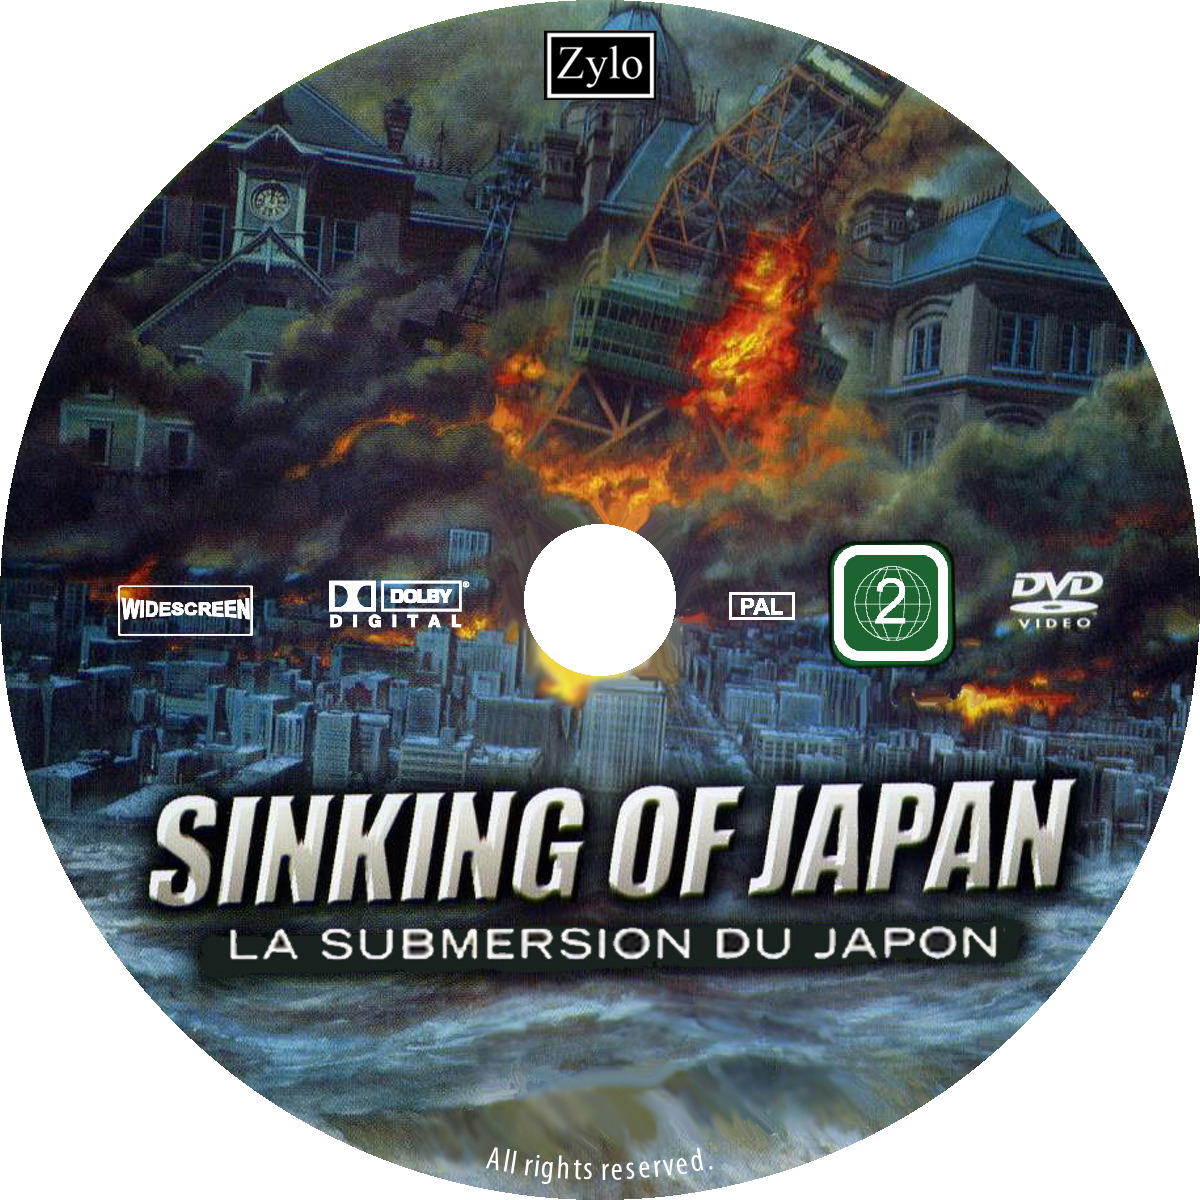 La Submersion du Japon custom